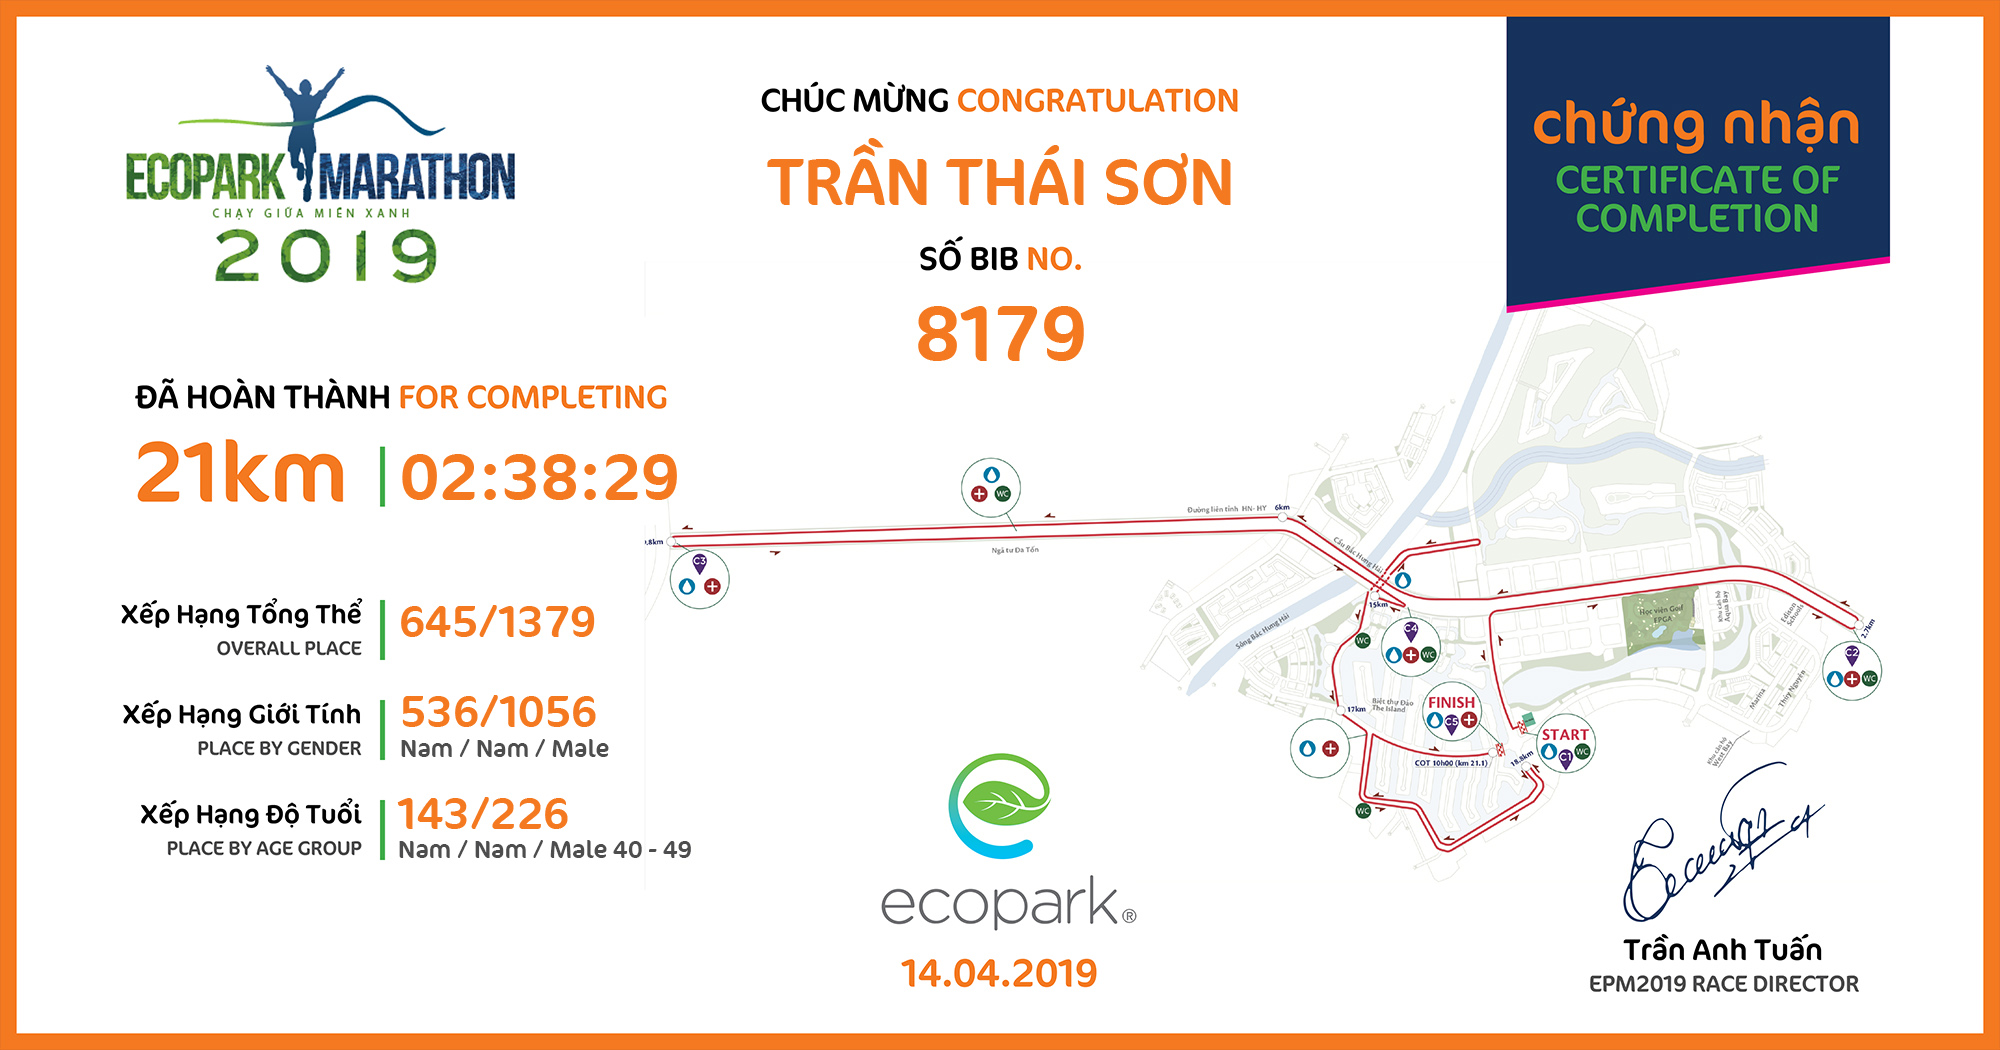 8179 - Trần Thái Sơn